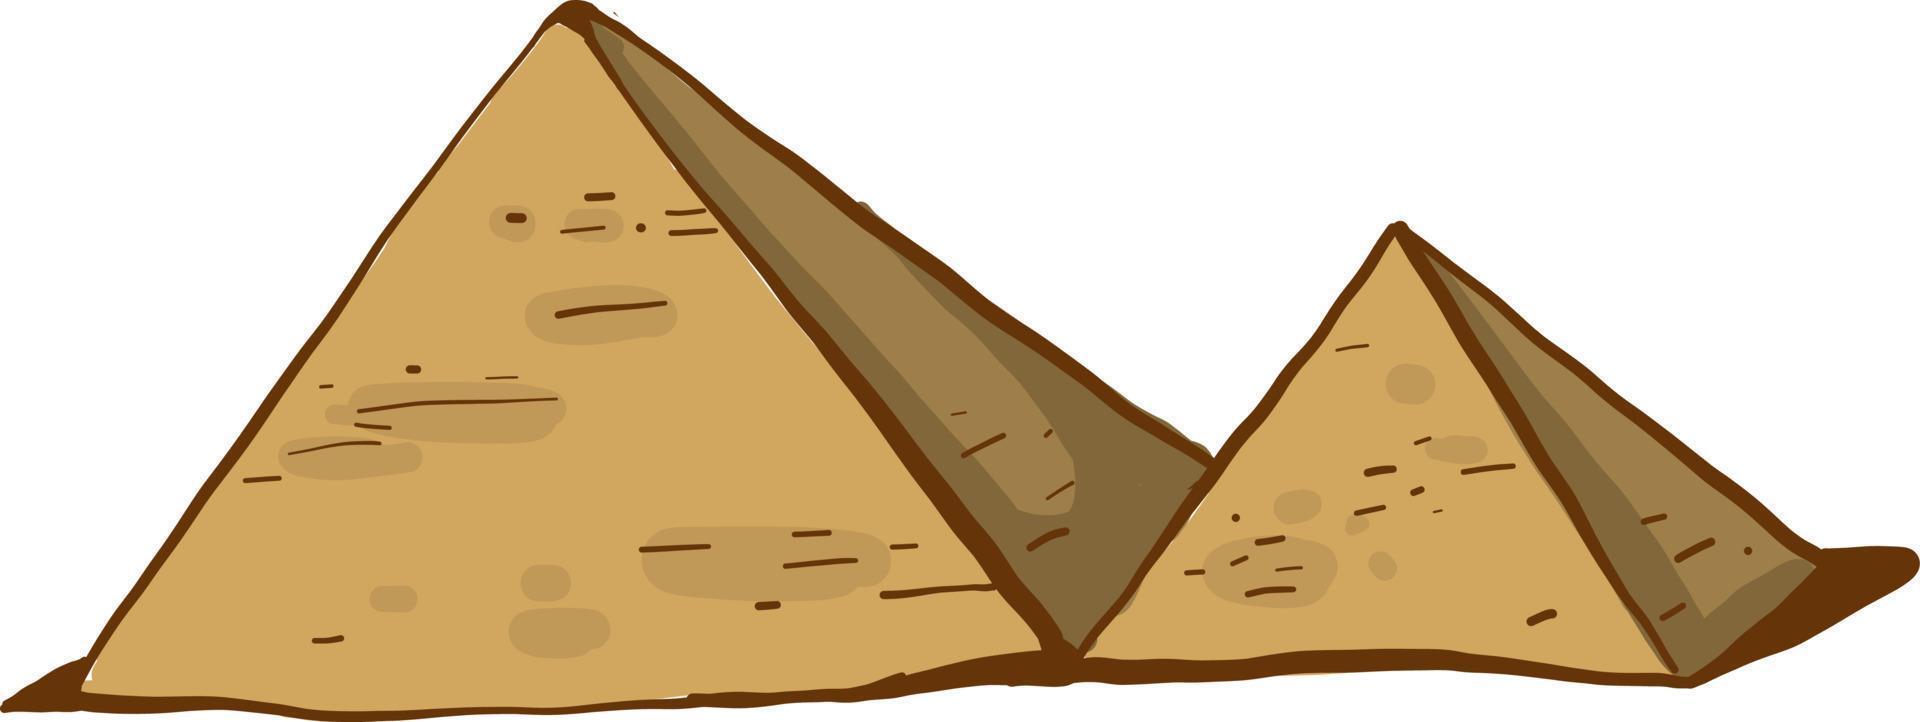 pirâmides egípcias, ilustração, vetor em fundo branco